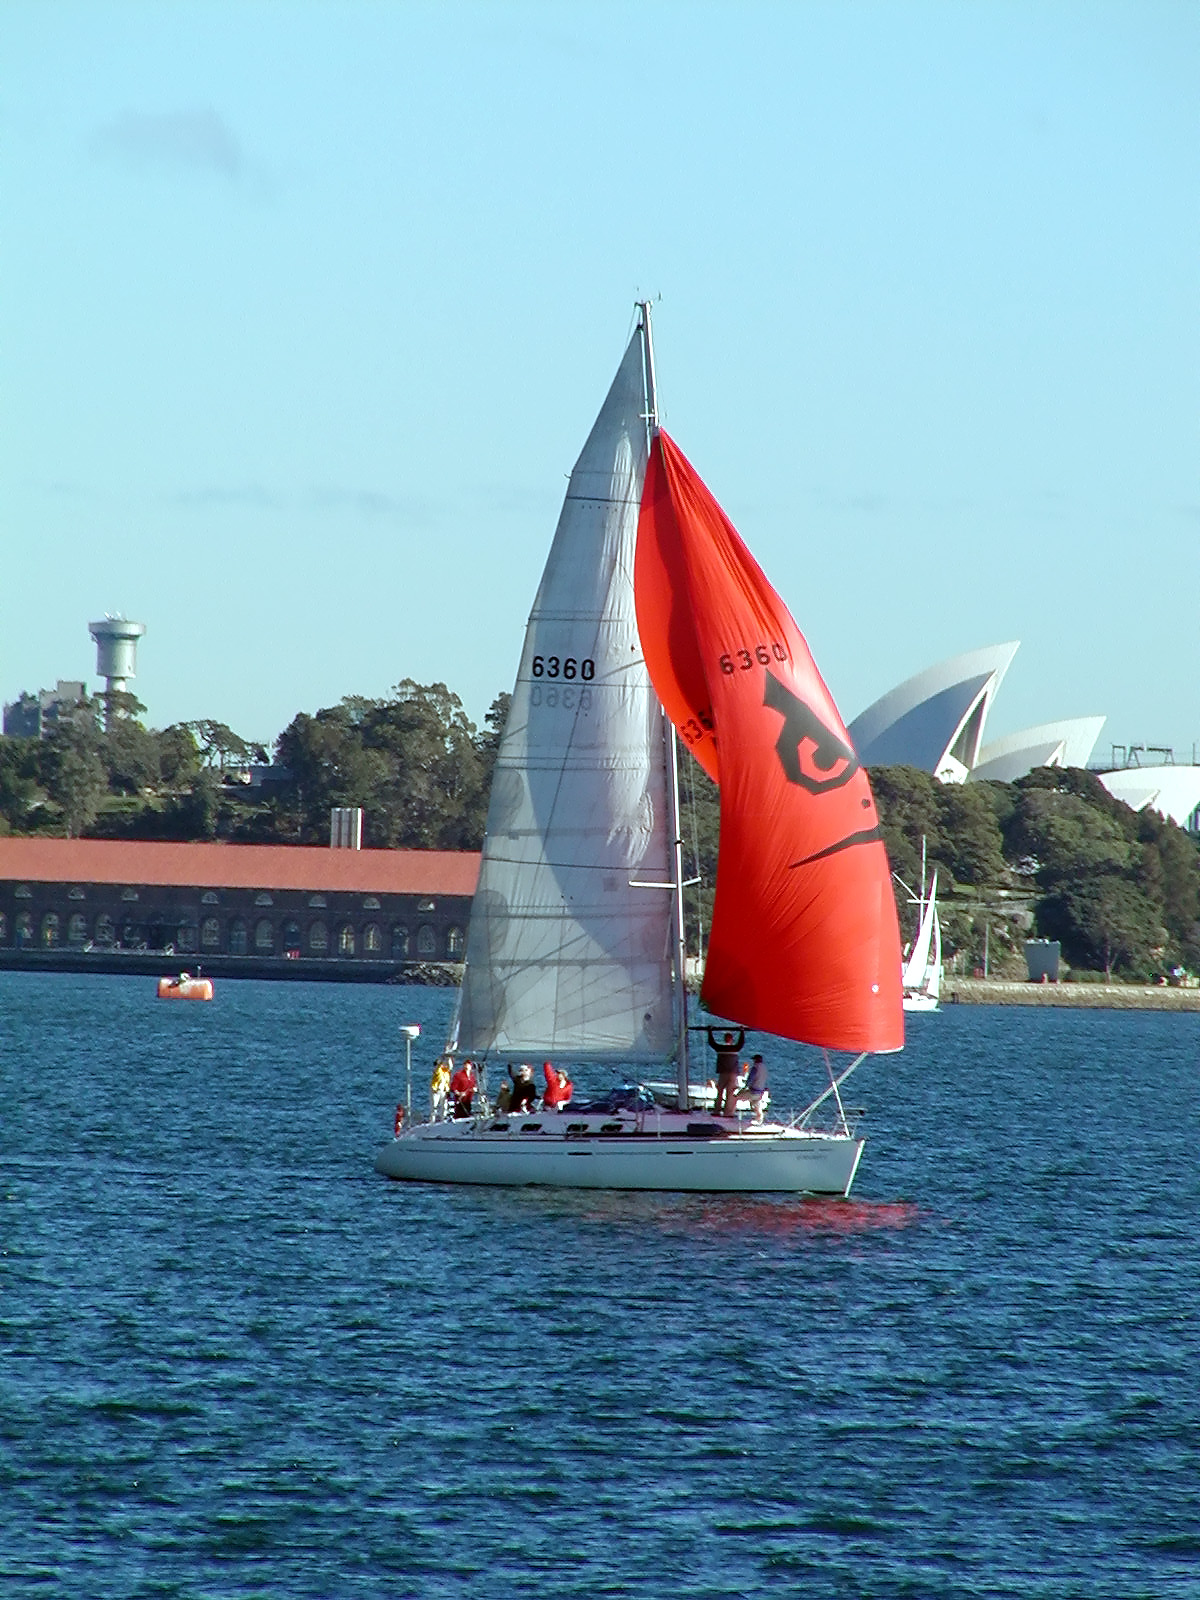 17-Jun-2001 10:24 - Sydney - Racing yacht